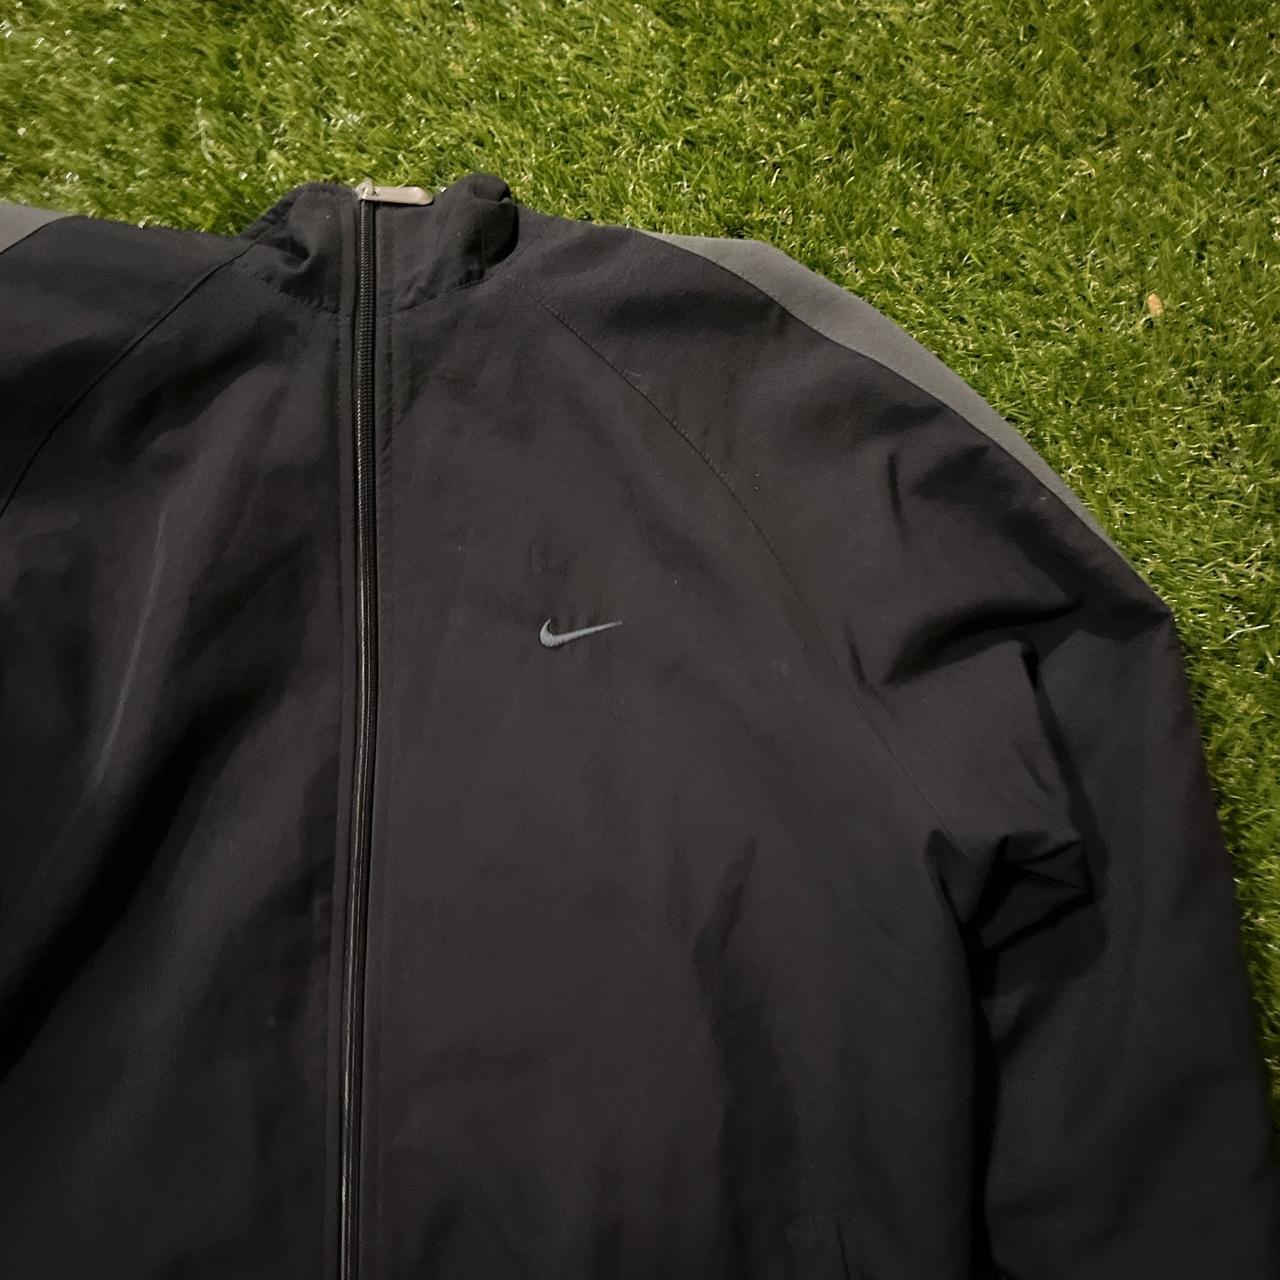 Vintage Nike jacket Size large 9/10 condition... - Depop